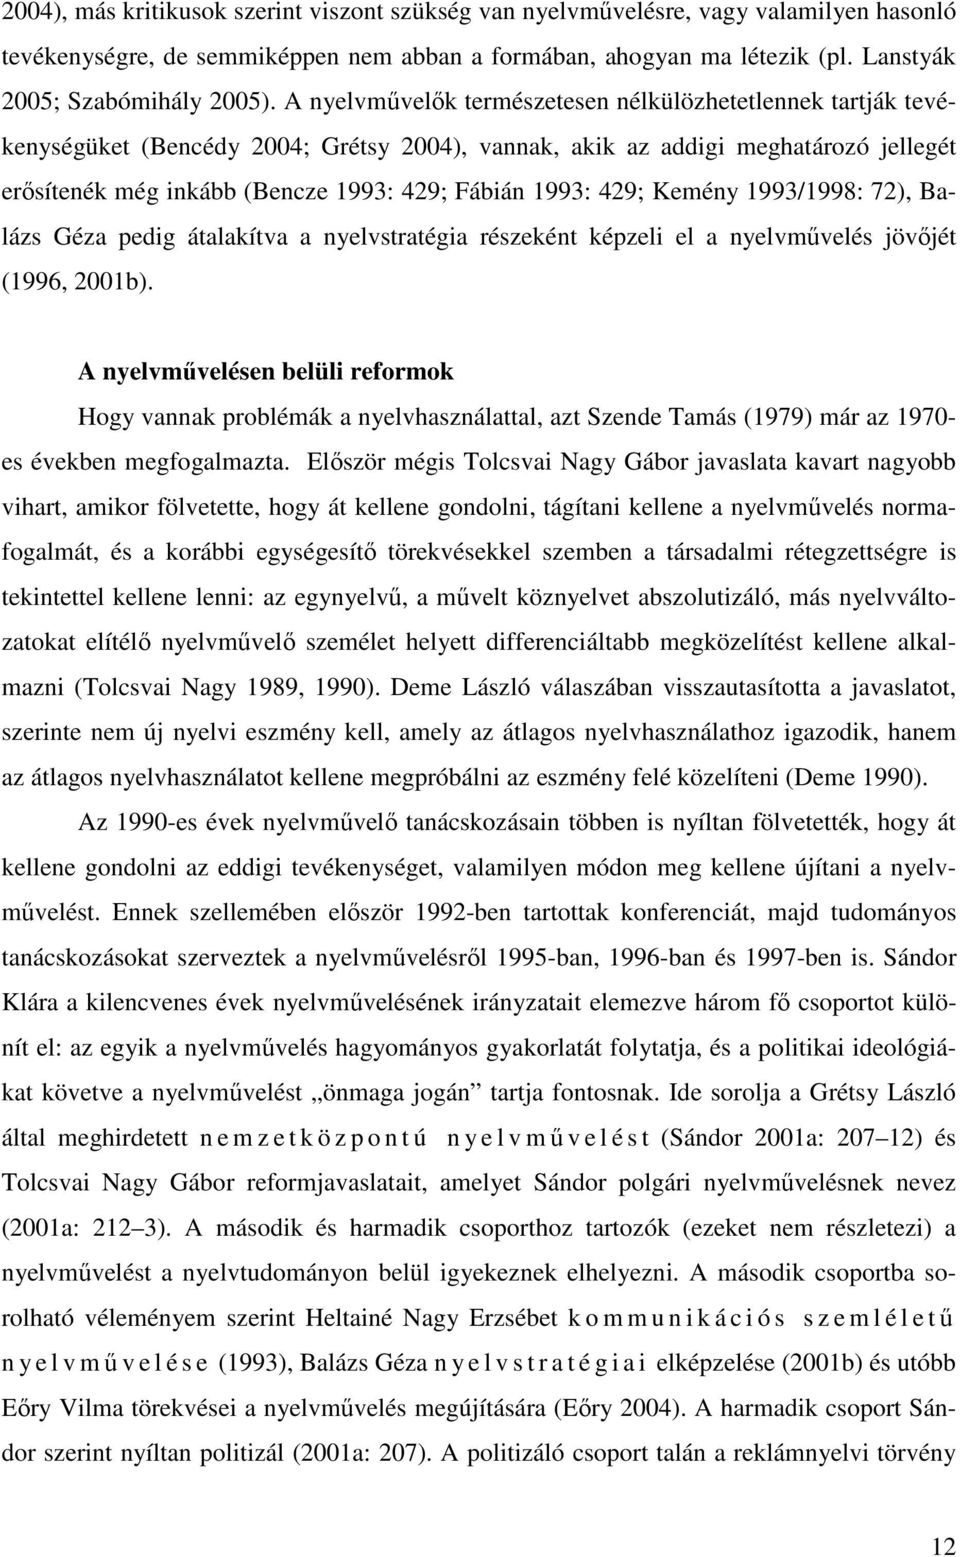 429; Kemény 1993/1998: 72), Balázs Géza pedig átalakítva a nyelvstratégia részeként képzeli el a nyelvművelés jövőjét (1996, 2001b).